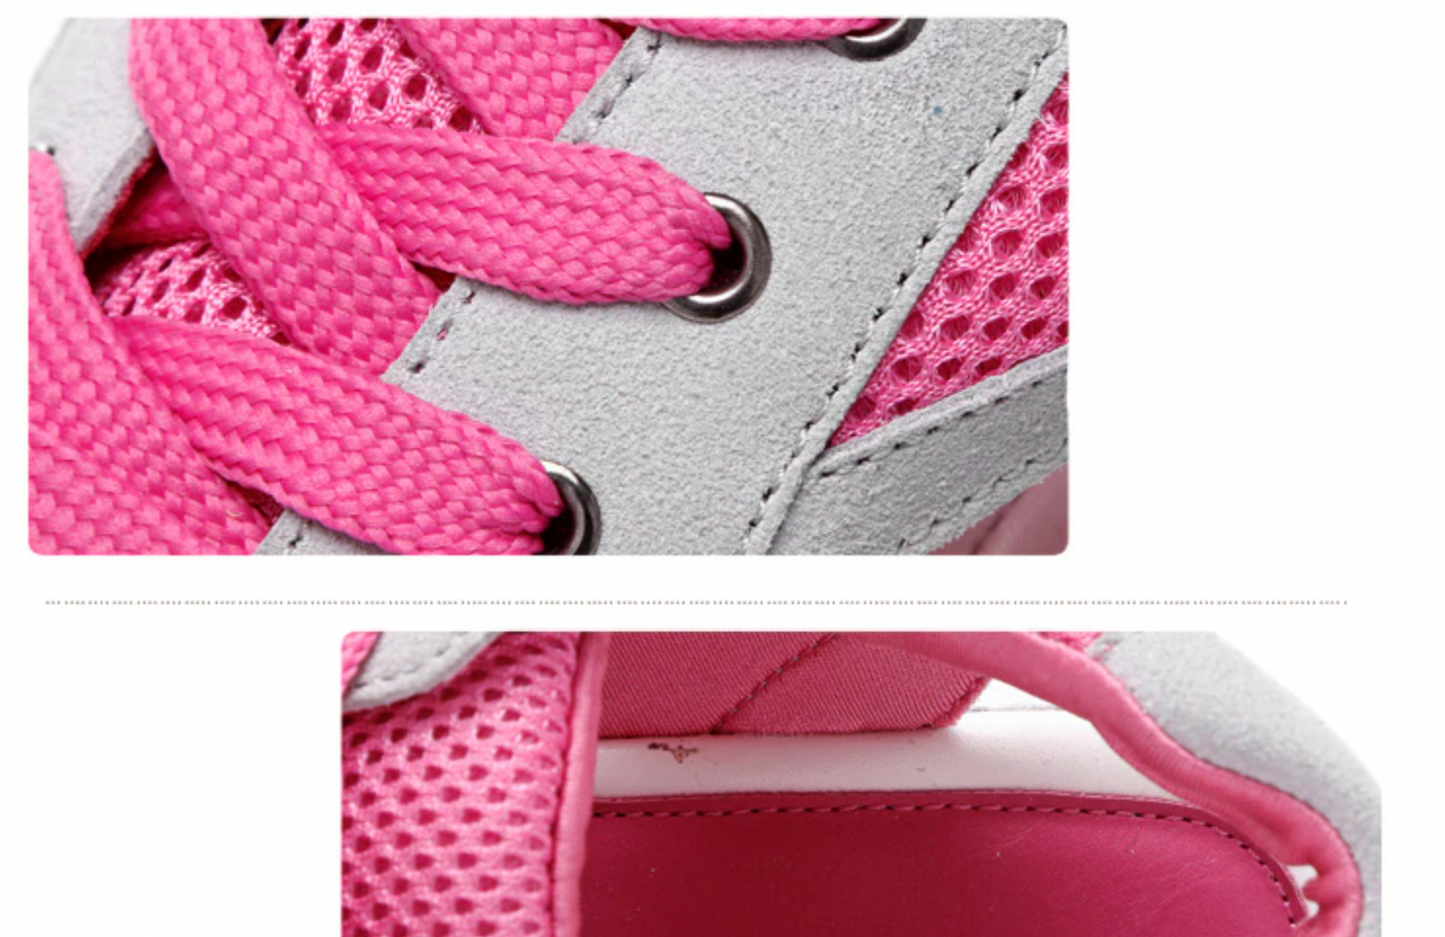 On This Week Sale Off 50%🔥Women Platform Soft Wide Fit Adjustable Sandals